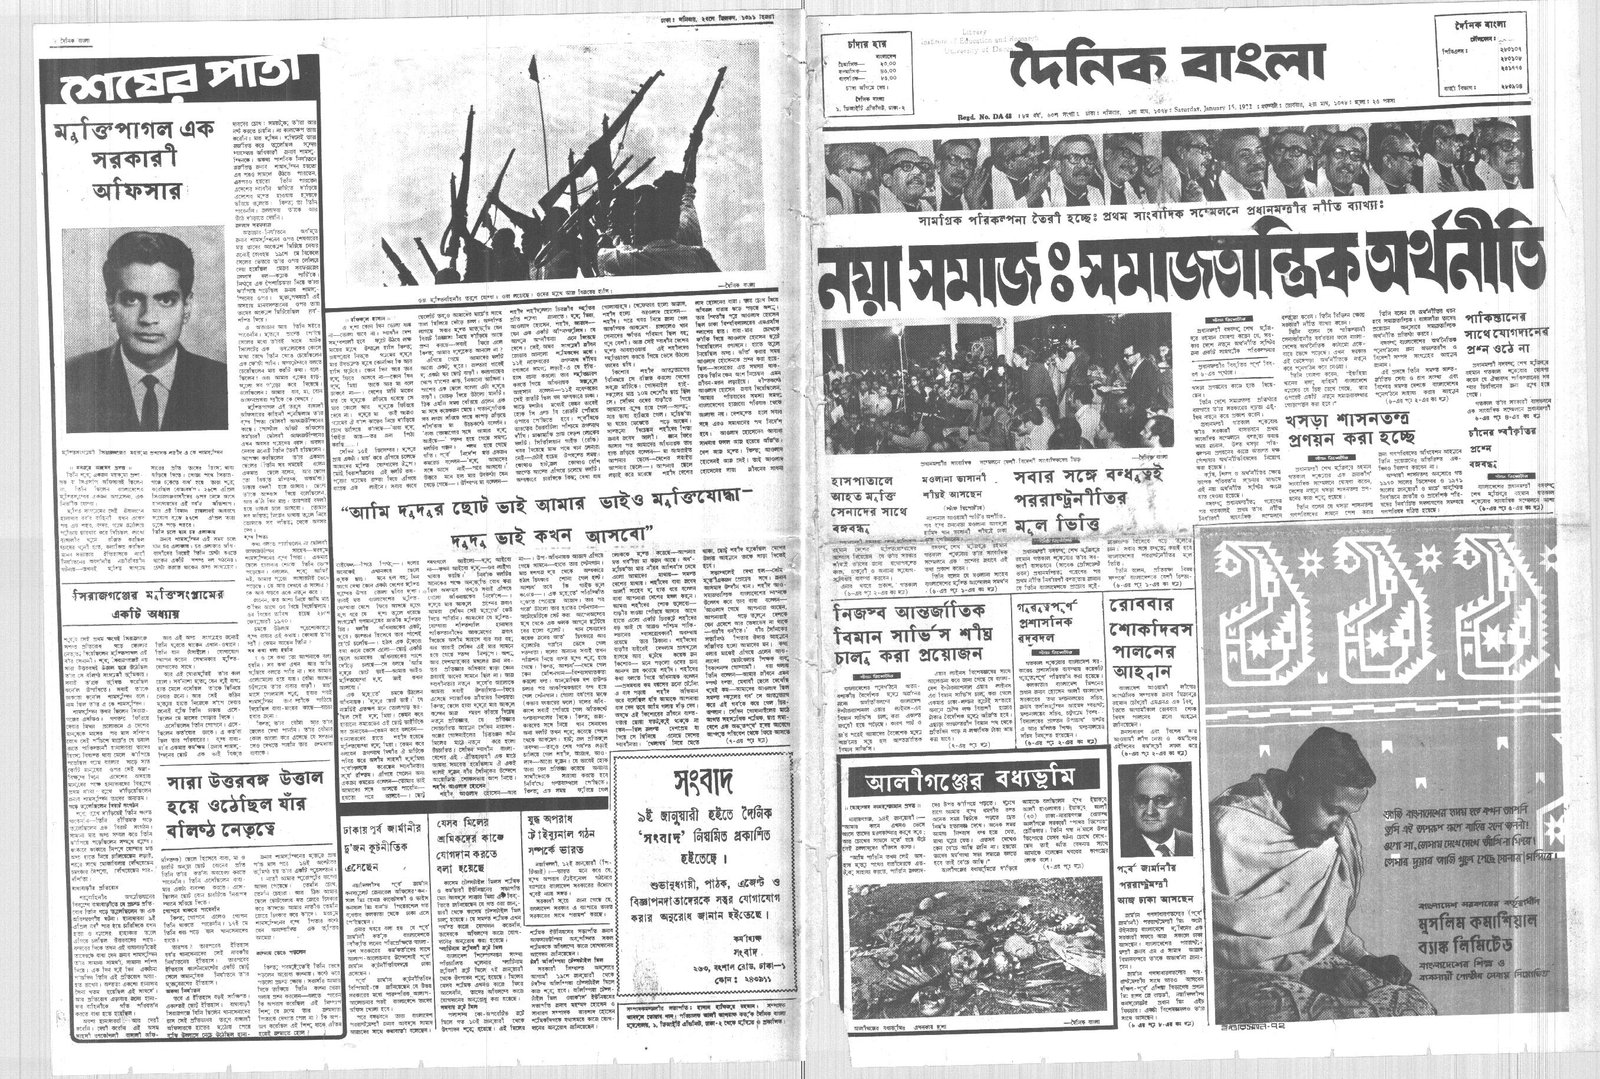 15JAN1972-DAINIK BANGLA-Regular-Page 1 and 8